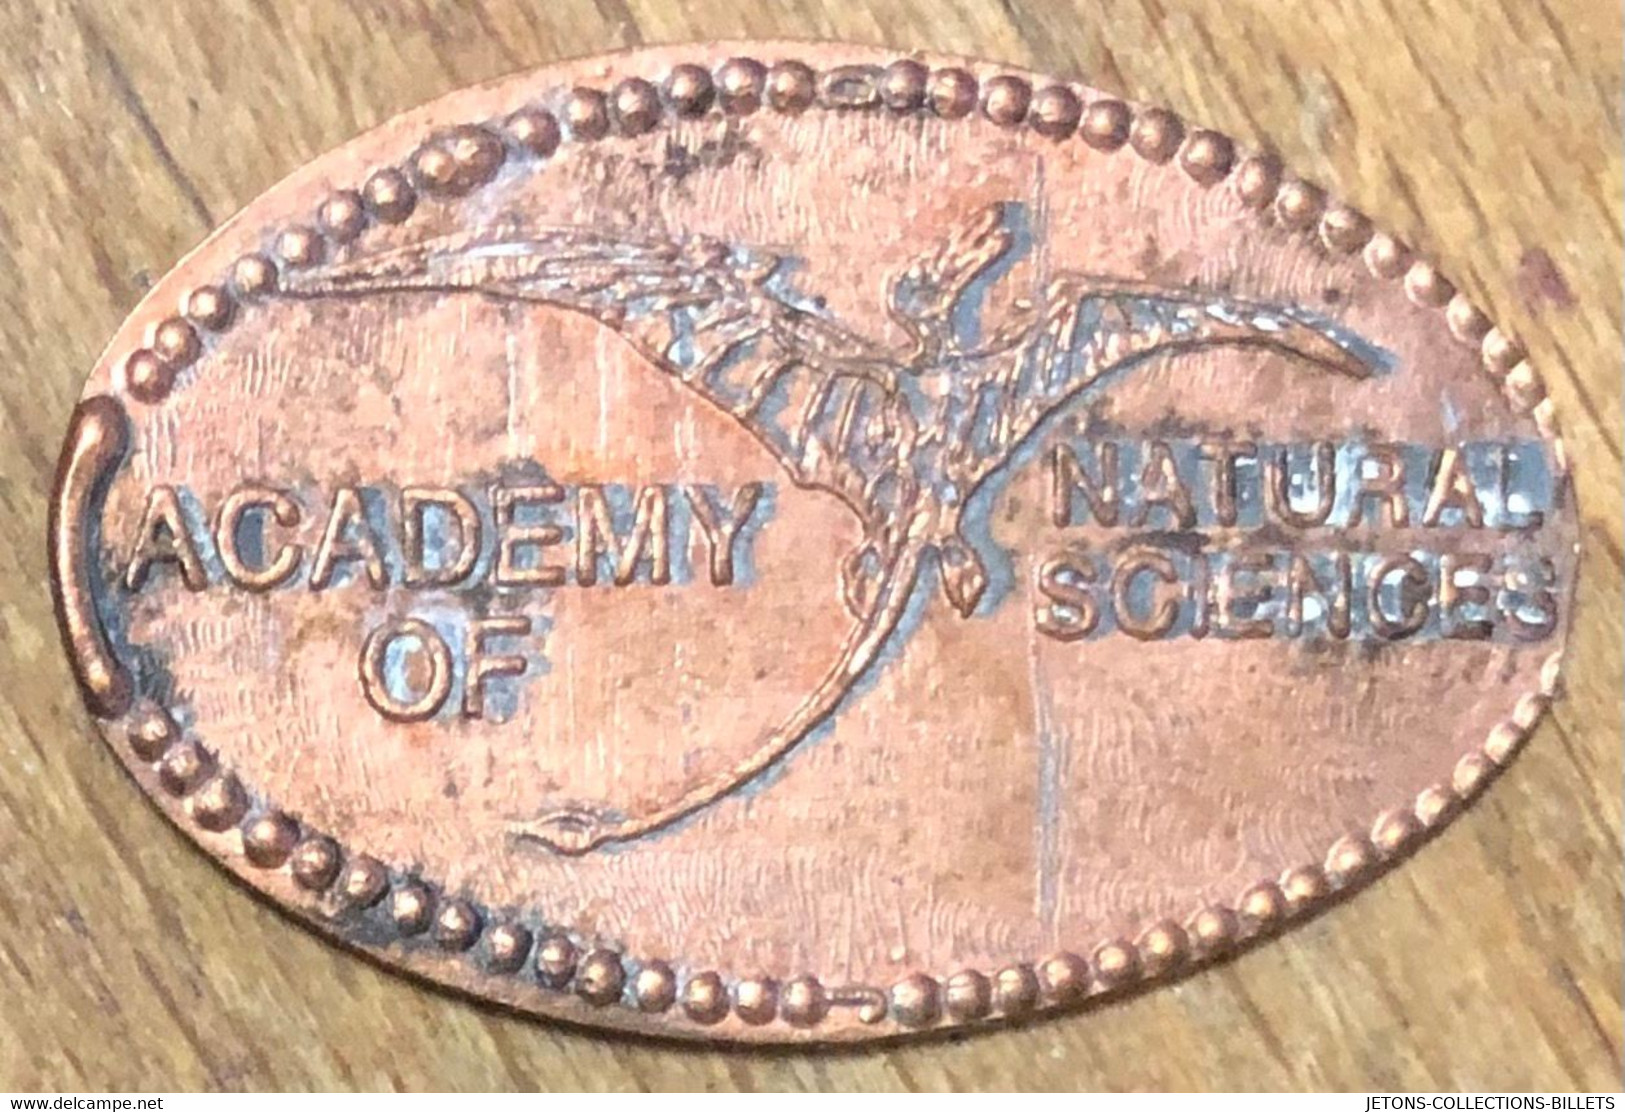 ÉTATS-UNIS USA ACADEMY OF NATURAL SCIENCES PIÈCE ÉCRASÉE PENNY ELONGATED COIN MEDAILLE TOURISTIQUE MEDALS TOKENS - Souvenir-Medaille (elongated Coins)